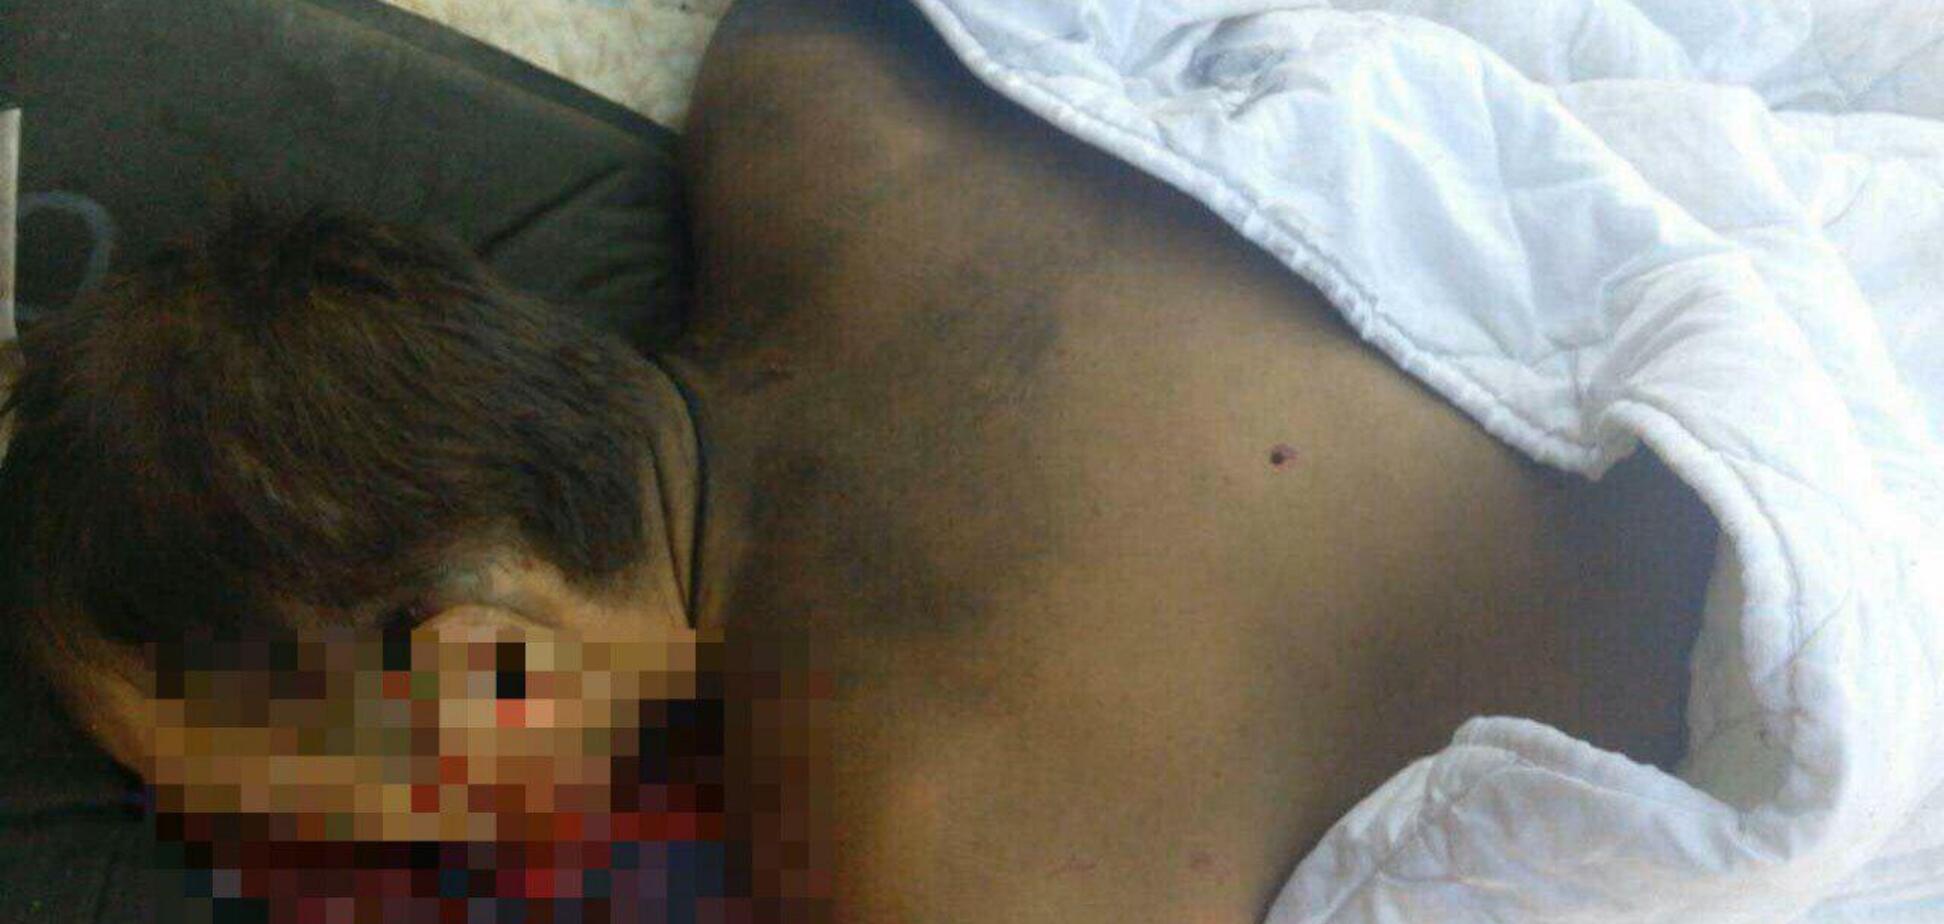 У Сумах застрелили екс-чиновника: перші криваві фото з місця вбивства, 18+